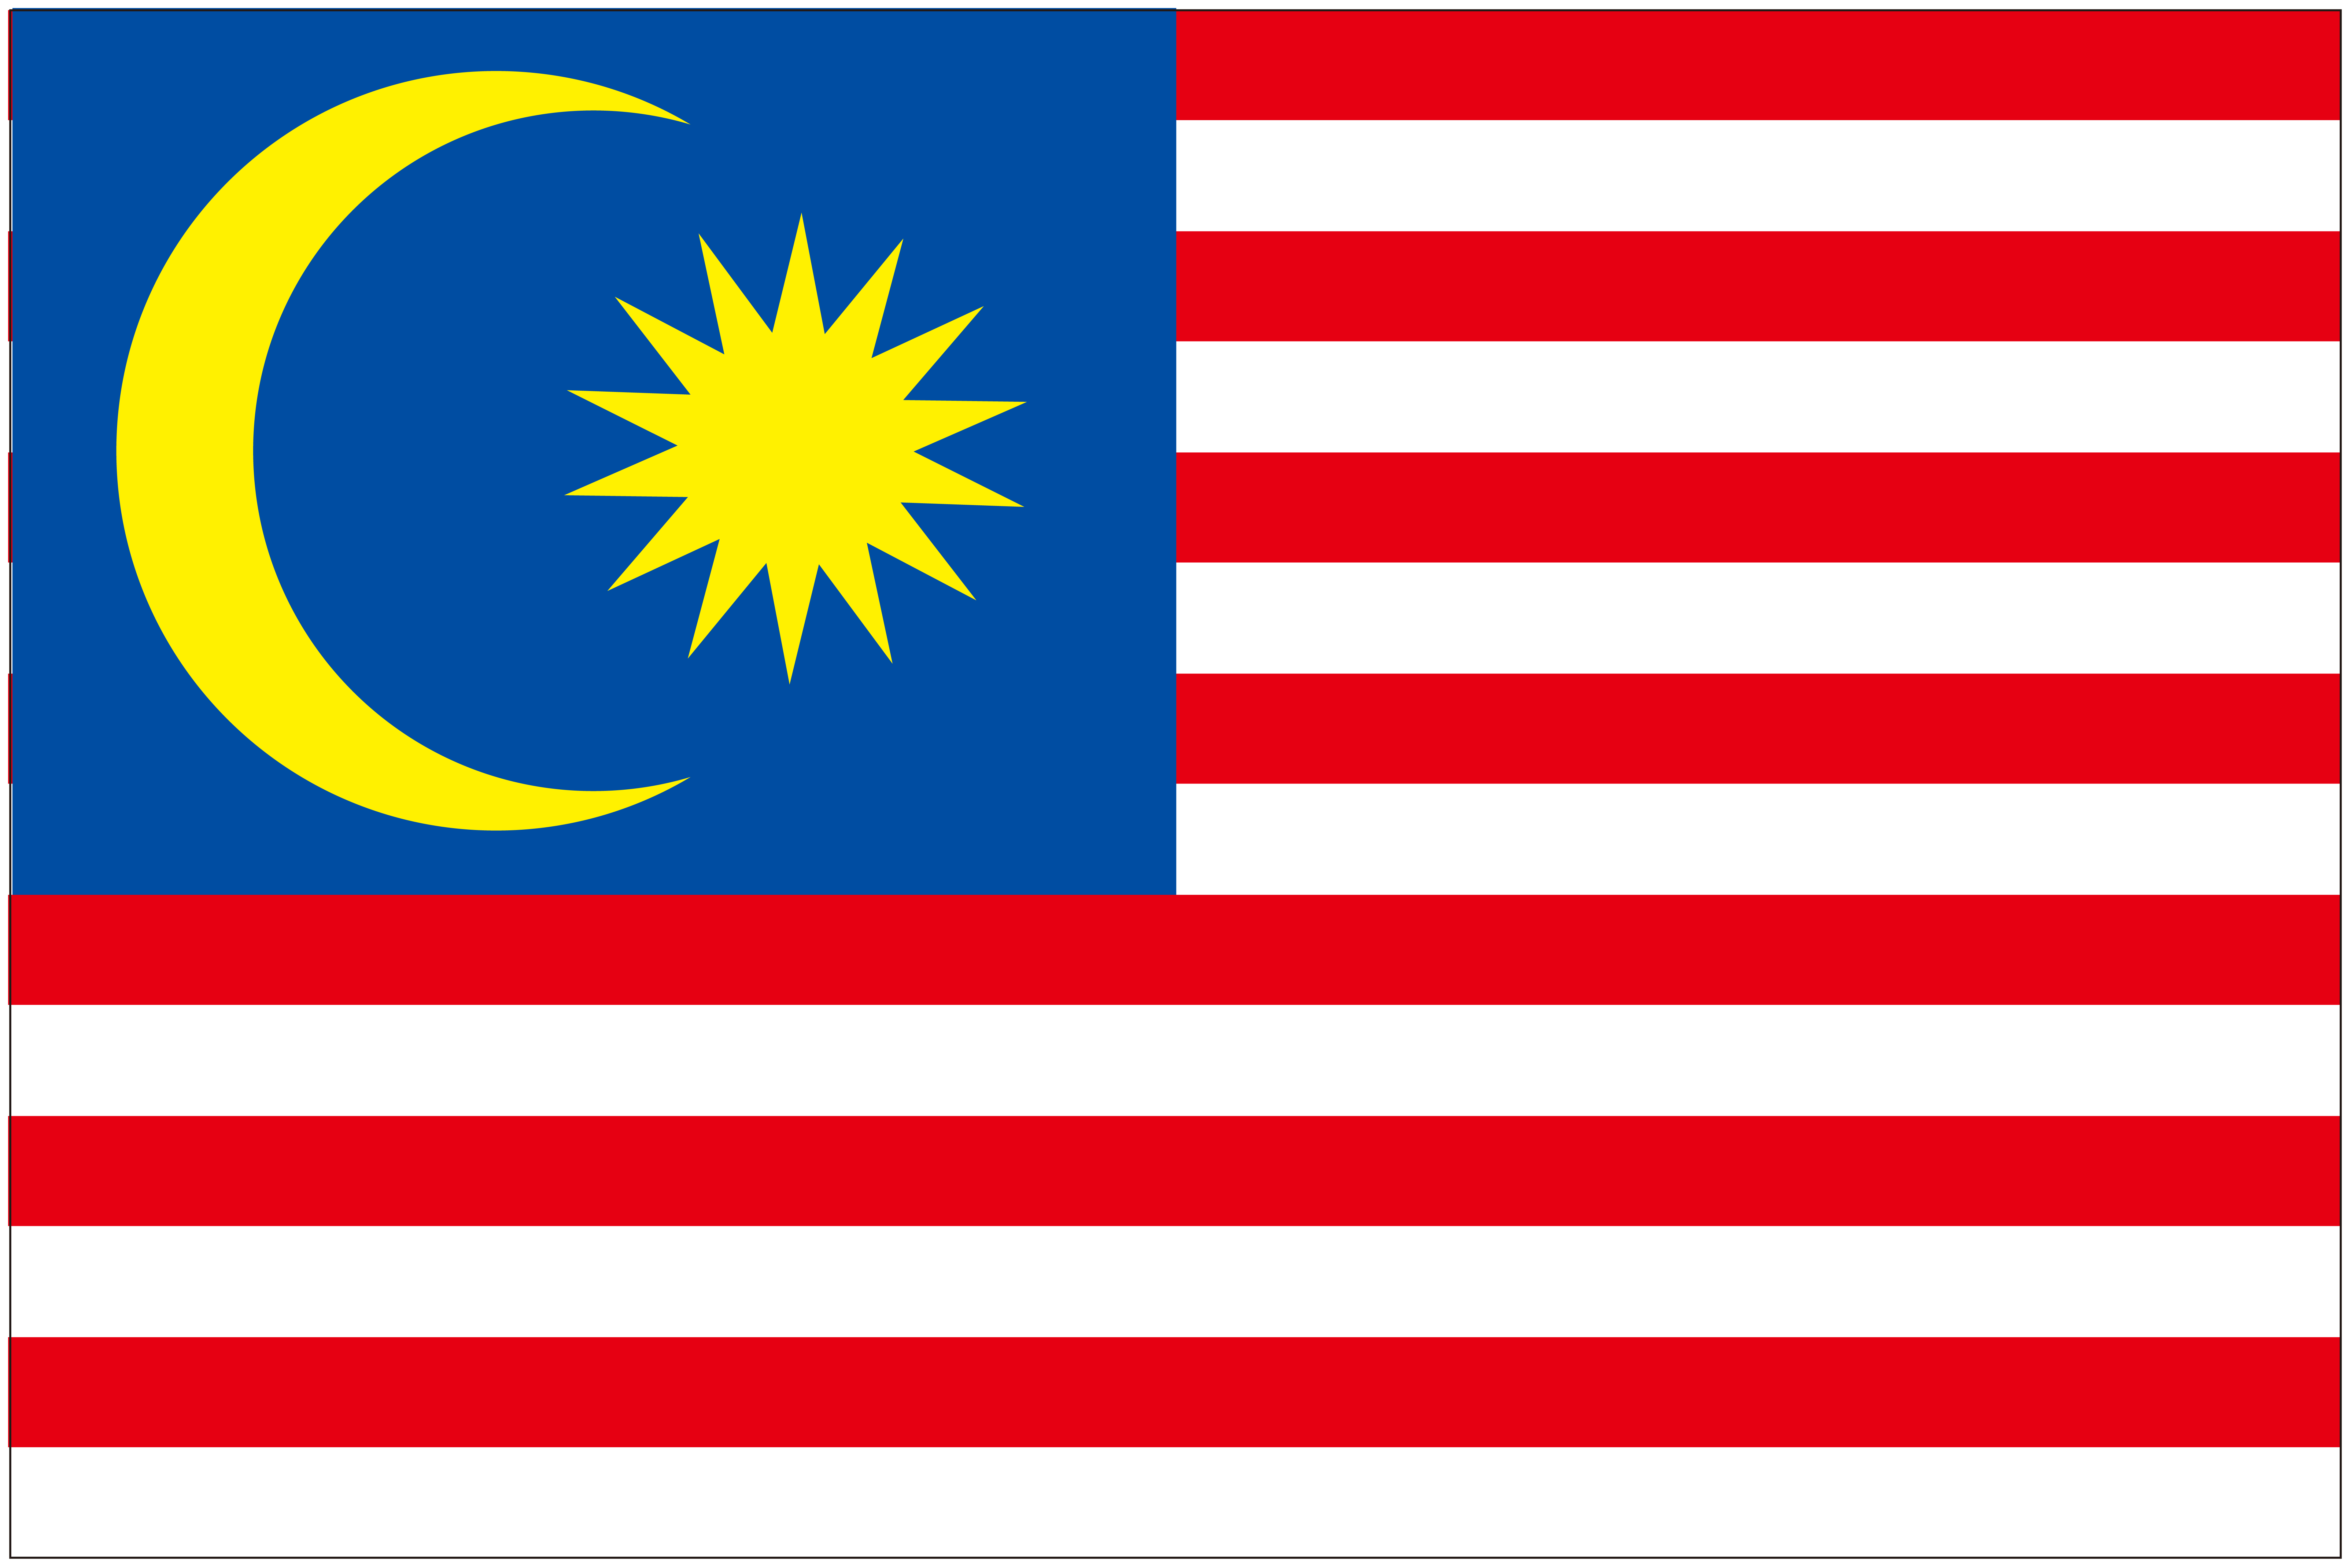 駐日マレーシア大使館での領事認証取得について【アポスティーユ取得、翻訳】